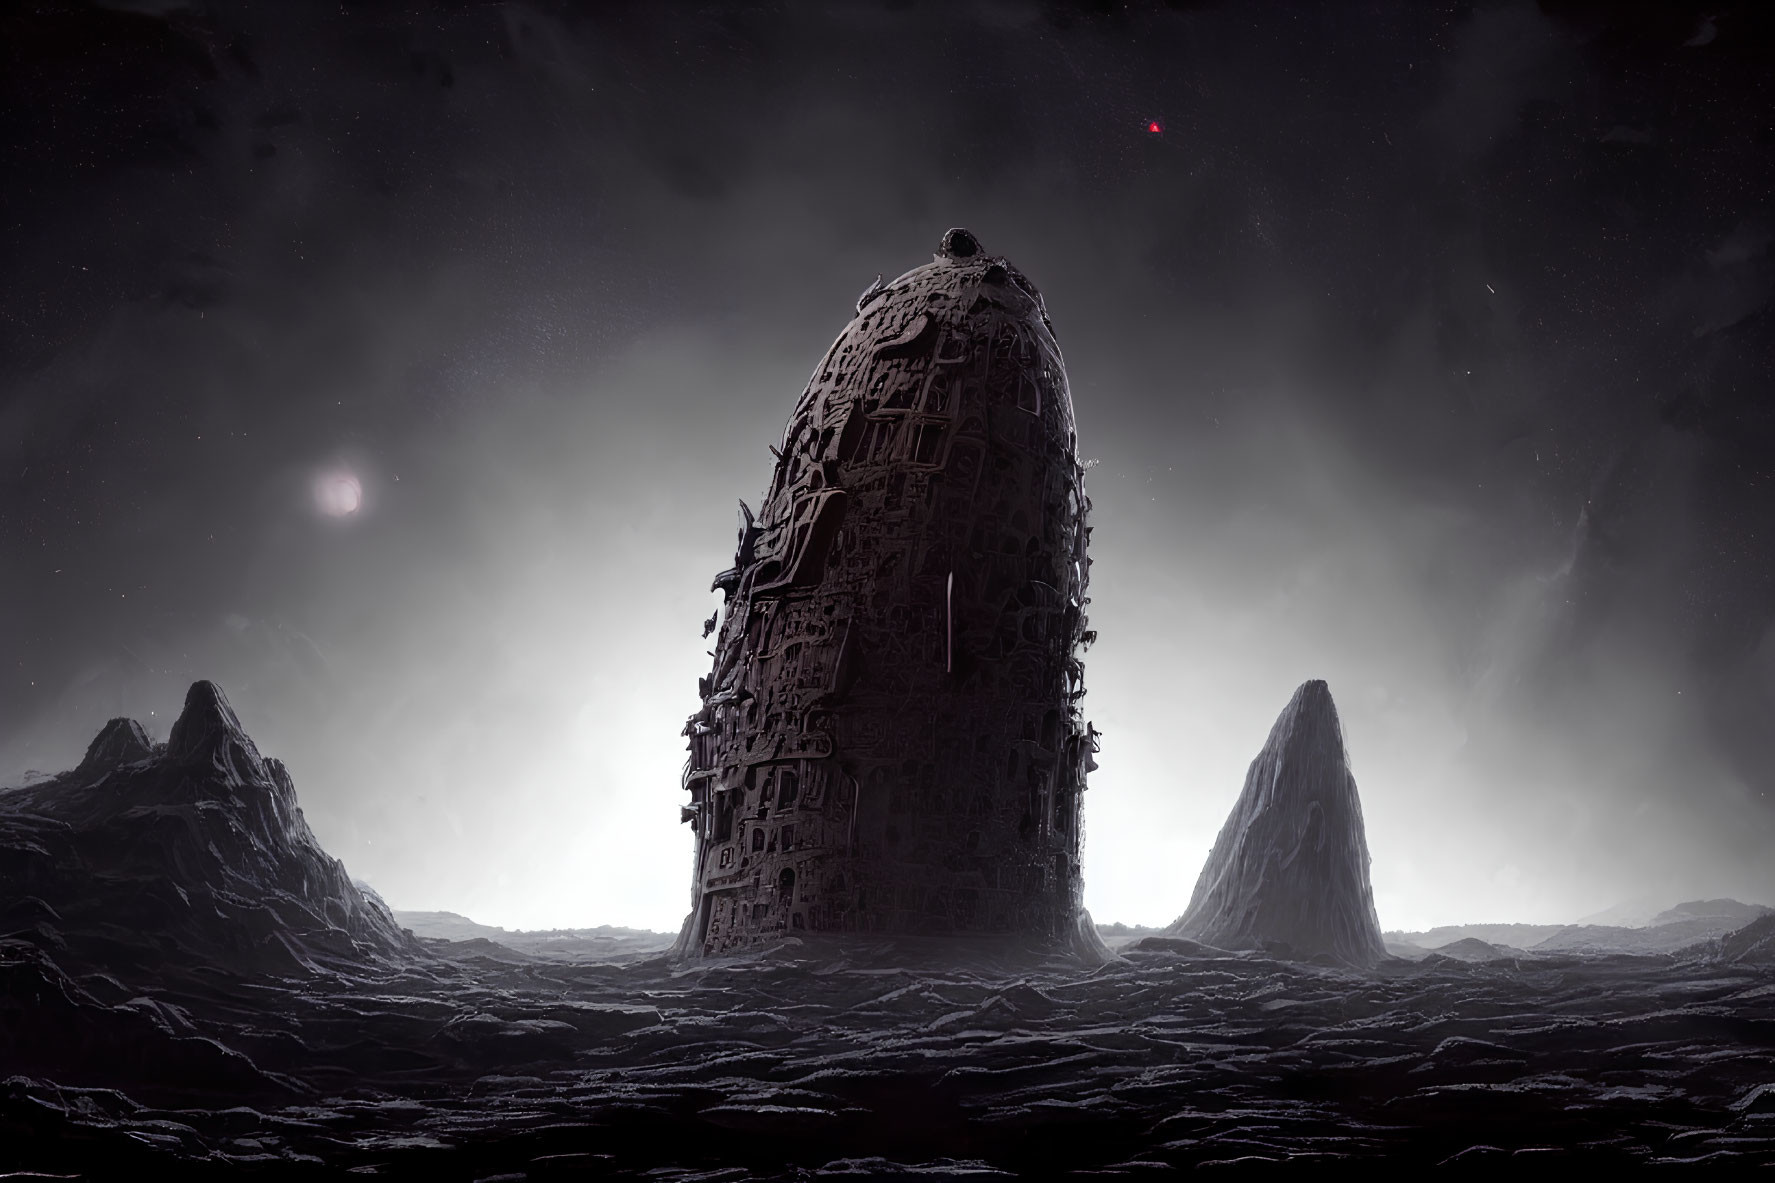 Monolithic structure on dark rocky landscape under star-filled sky